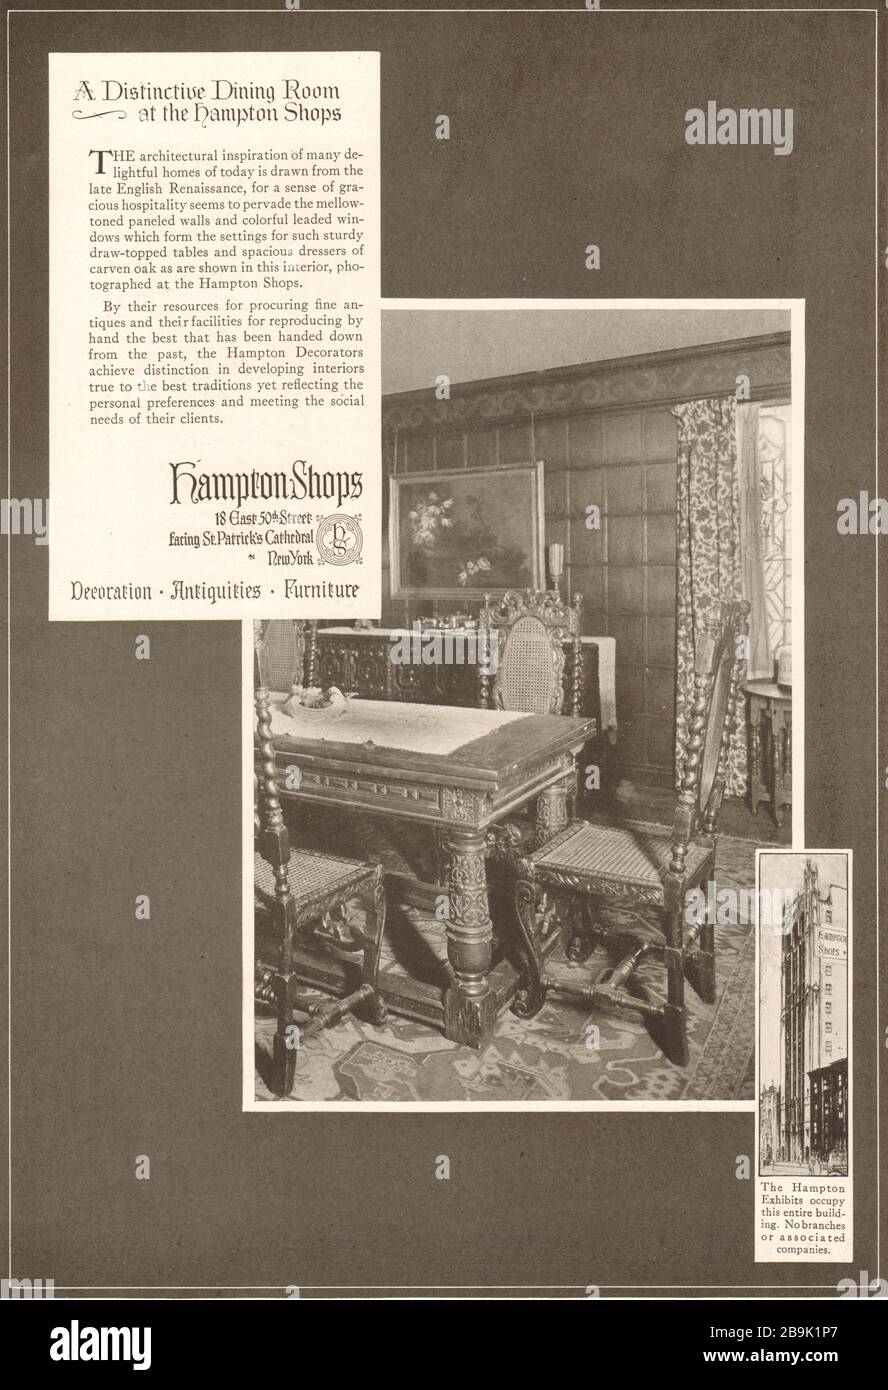 Une salle à manger distincte dans les boutiques de Hampton. Hampton Shops, 18 East 50ème Street, face à la cathédrale St Patrick, New York (1922) Banque D'Images